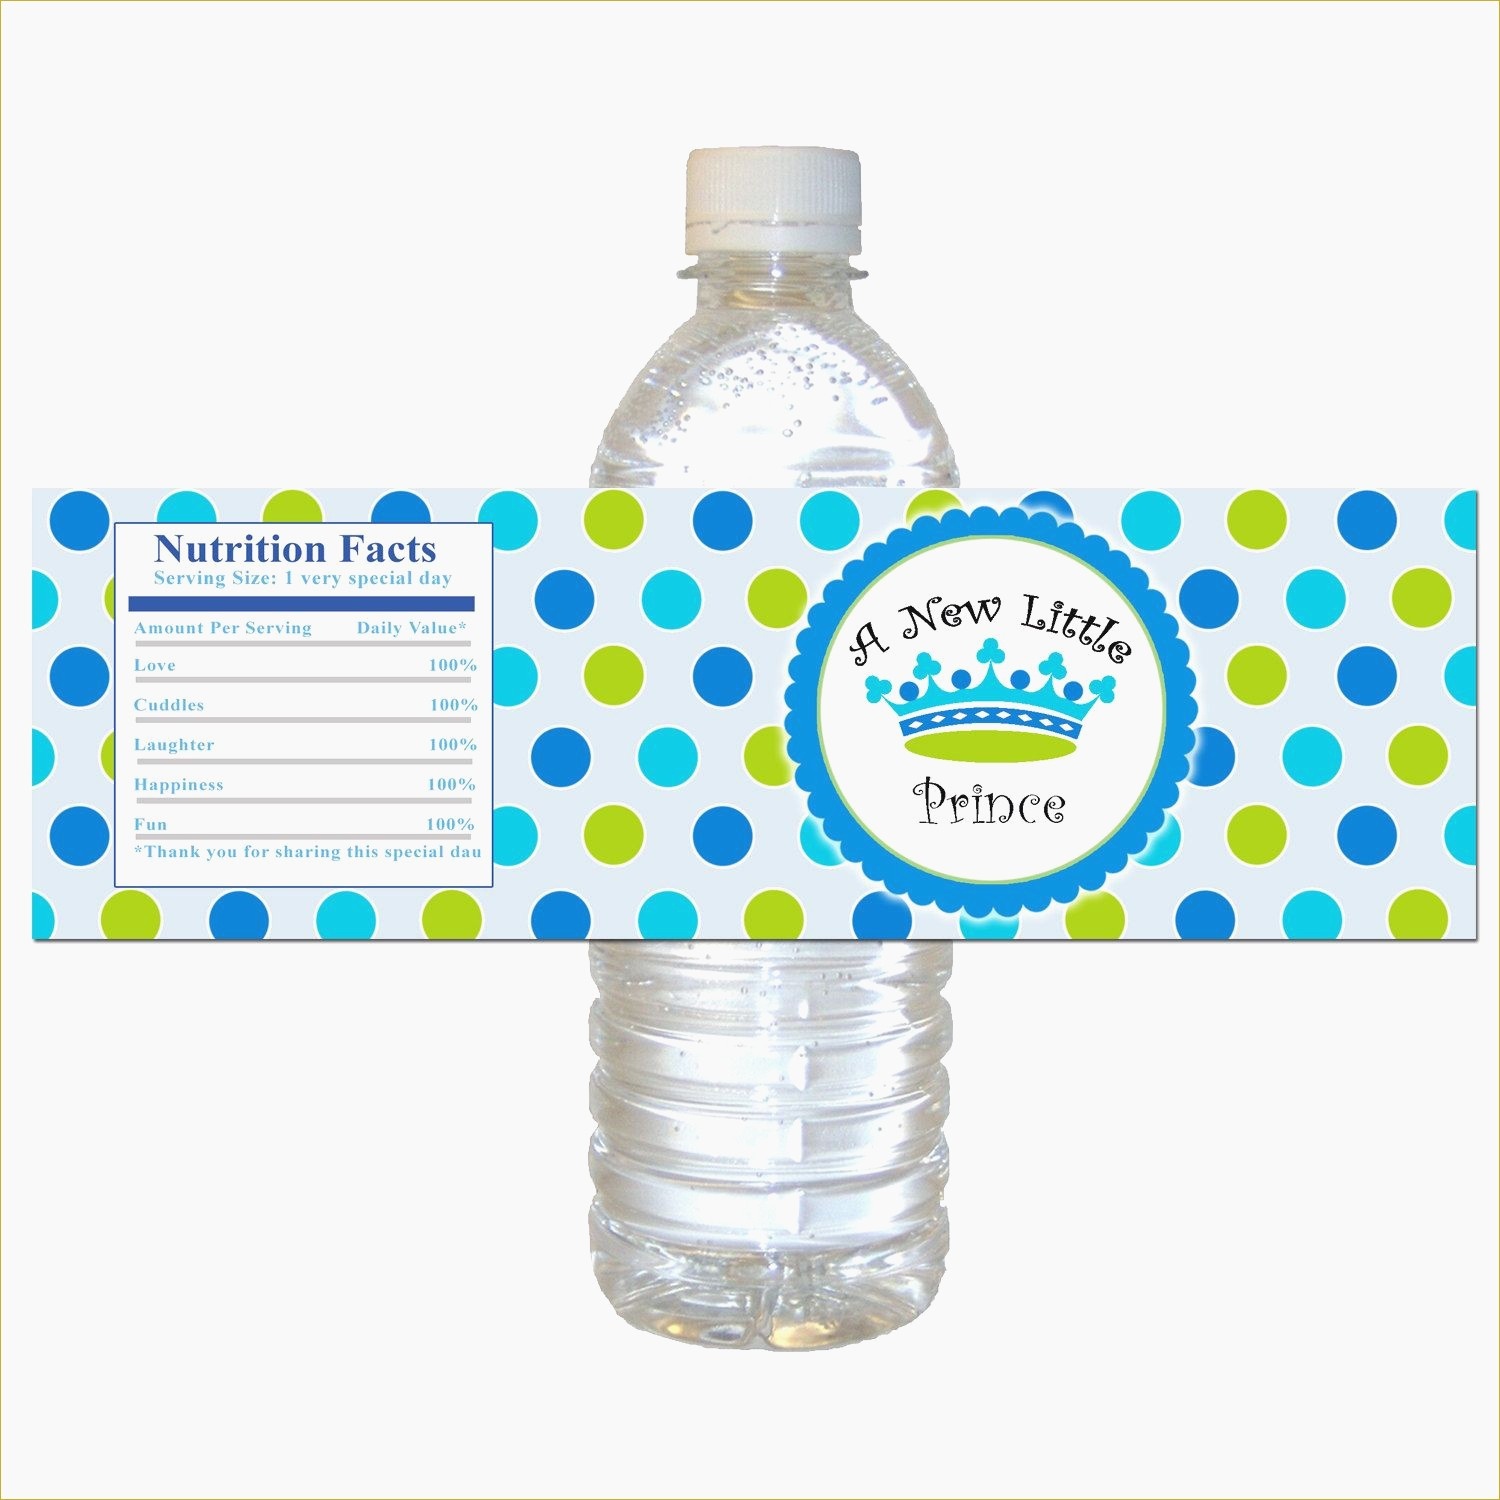 Elegant Free Printable Water Bottle Labels For Birthday - Acilmalumat - Free Printable Water Bottle Labels For Birthday